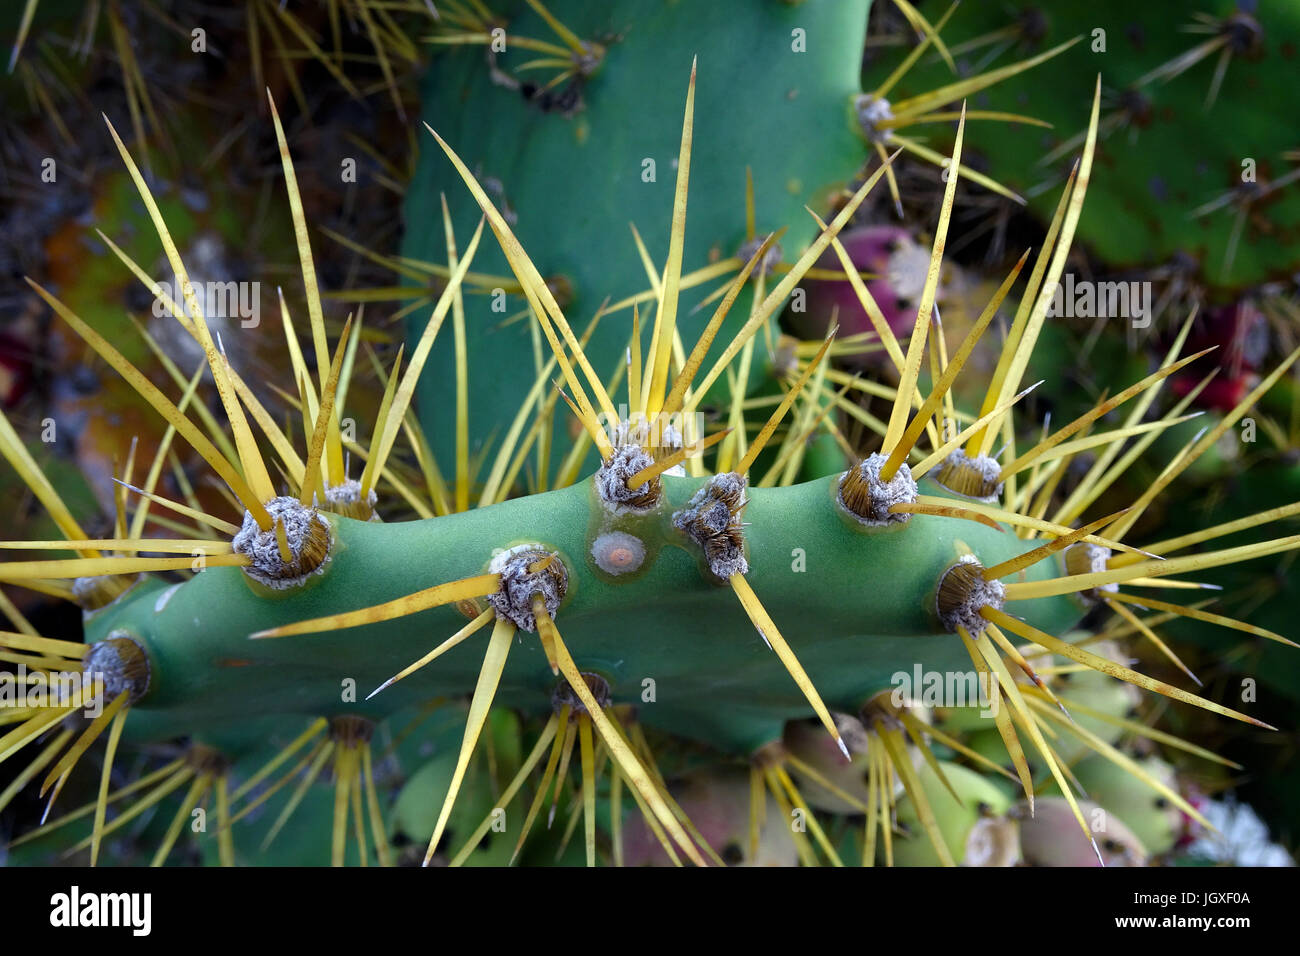 Stacheln vom Feigen - Kaktus (Opuntia ficus Indica, Opuntia ficus-barbarica), La Geria, Lanzarote, Kanarische Inseln, Europa | Stiche von Kakteen, stachelige Stockfoto